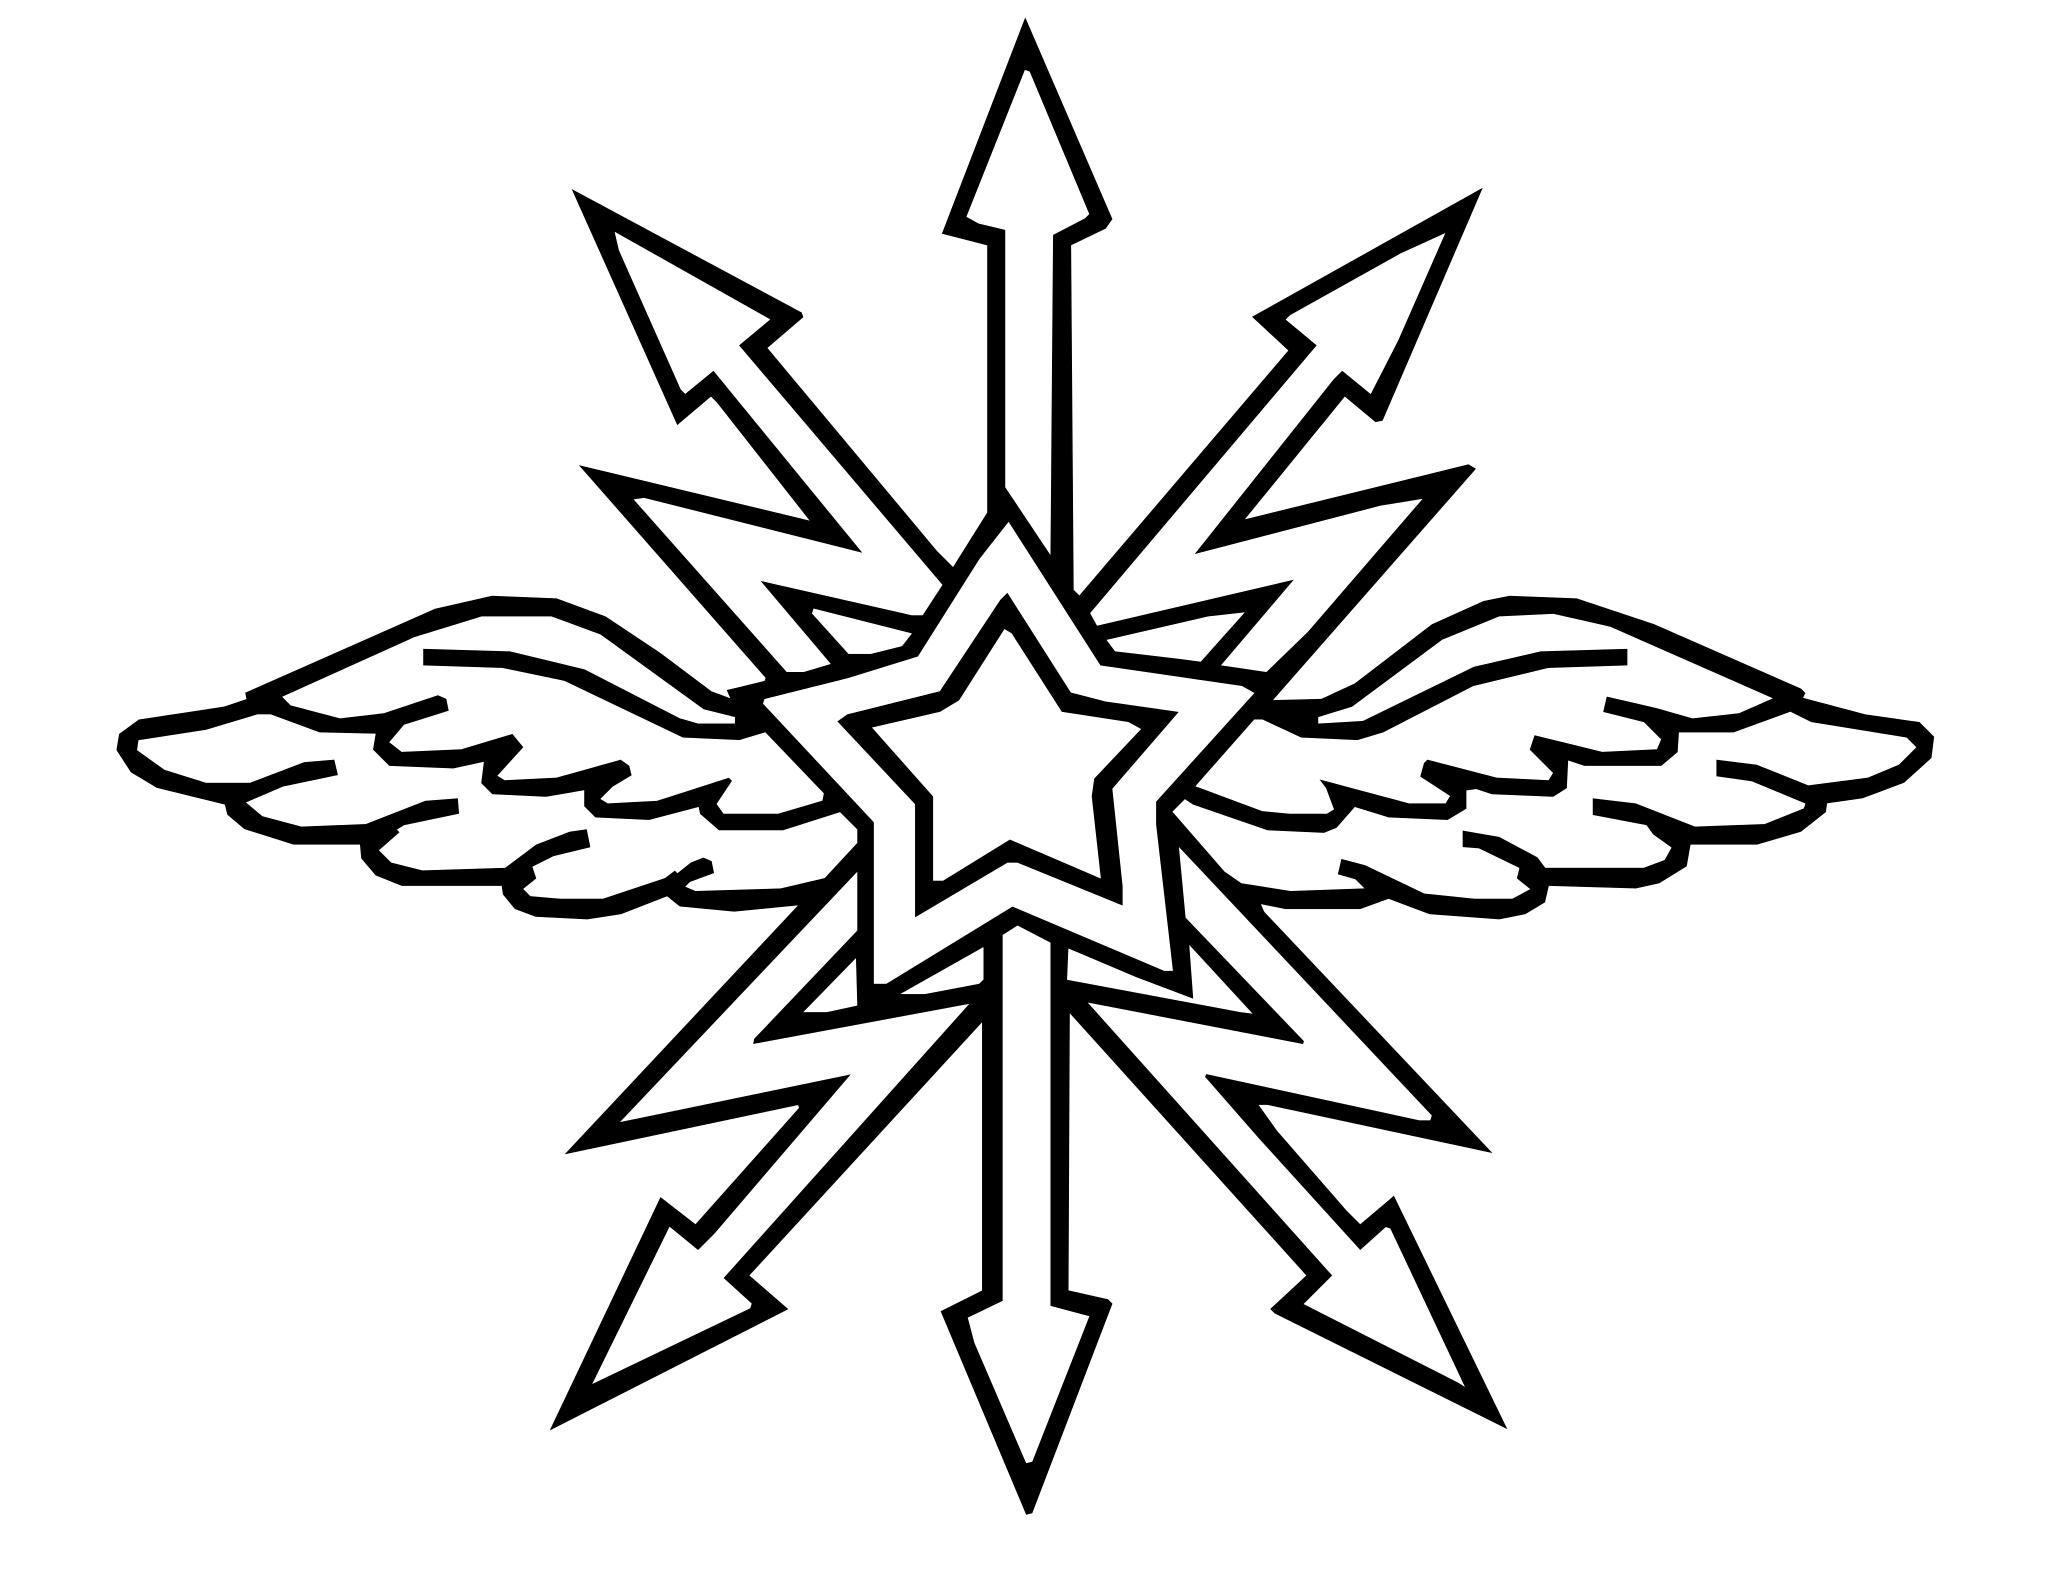 Эмблема связистов СССР